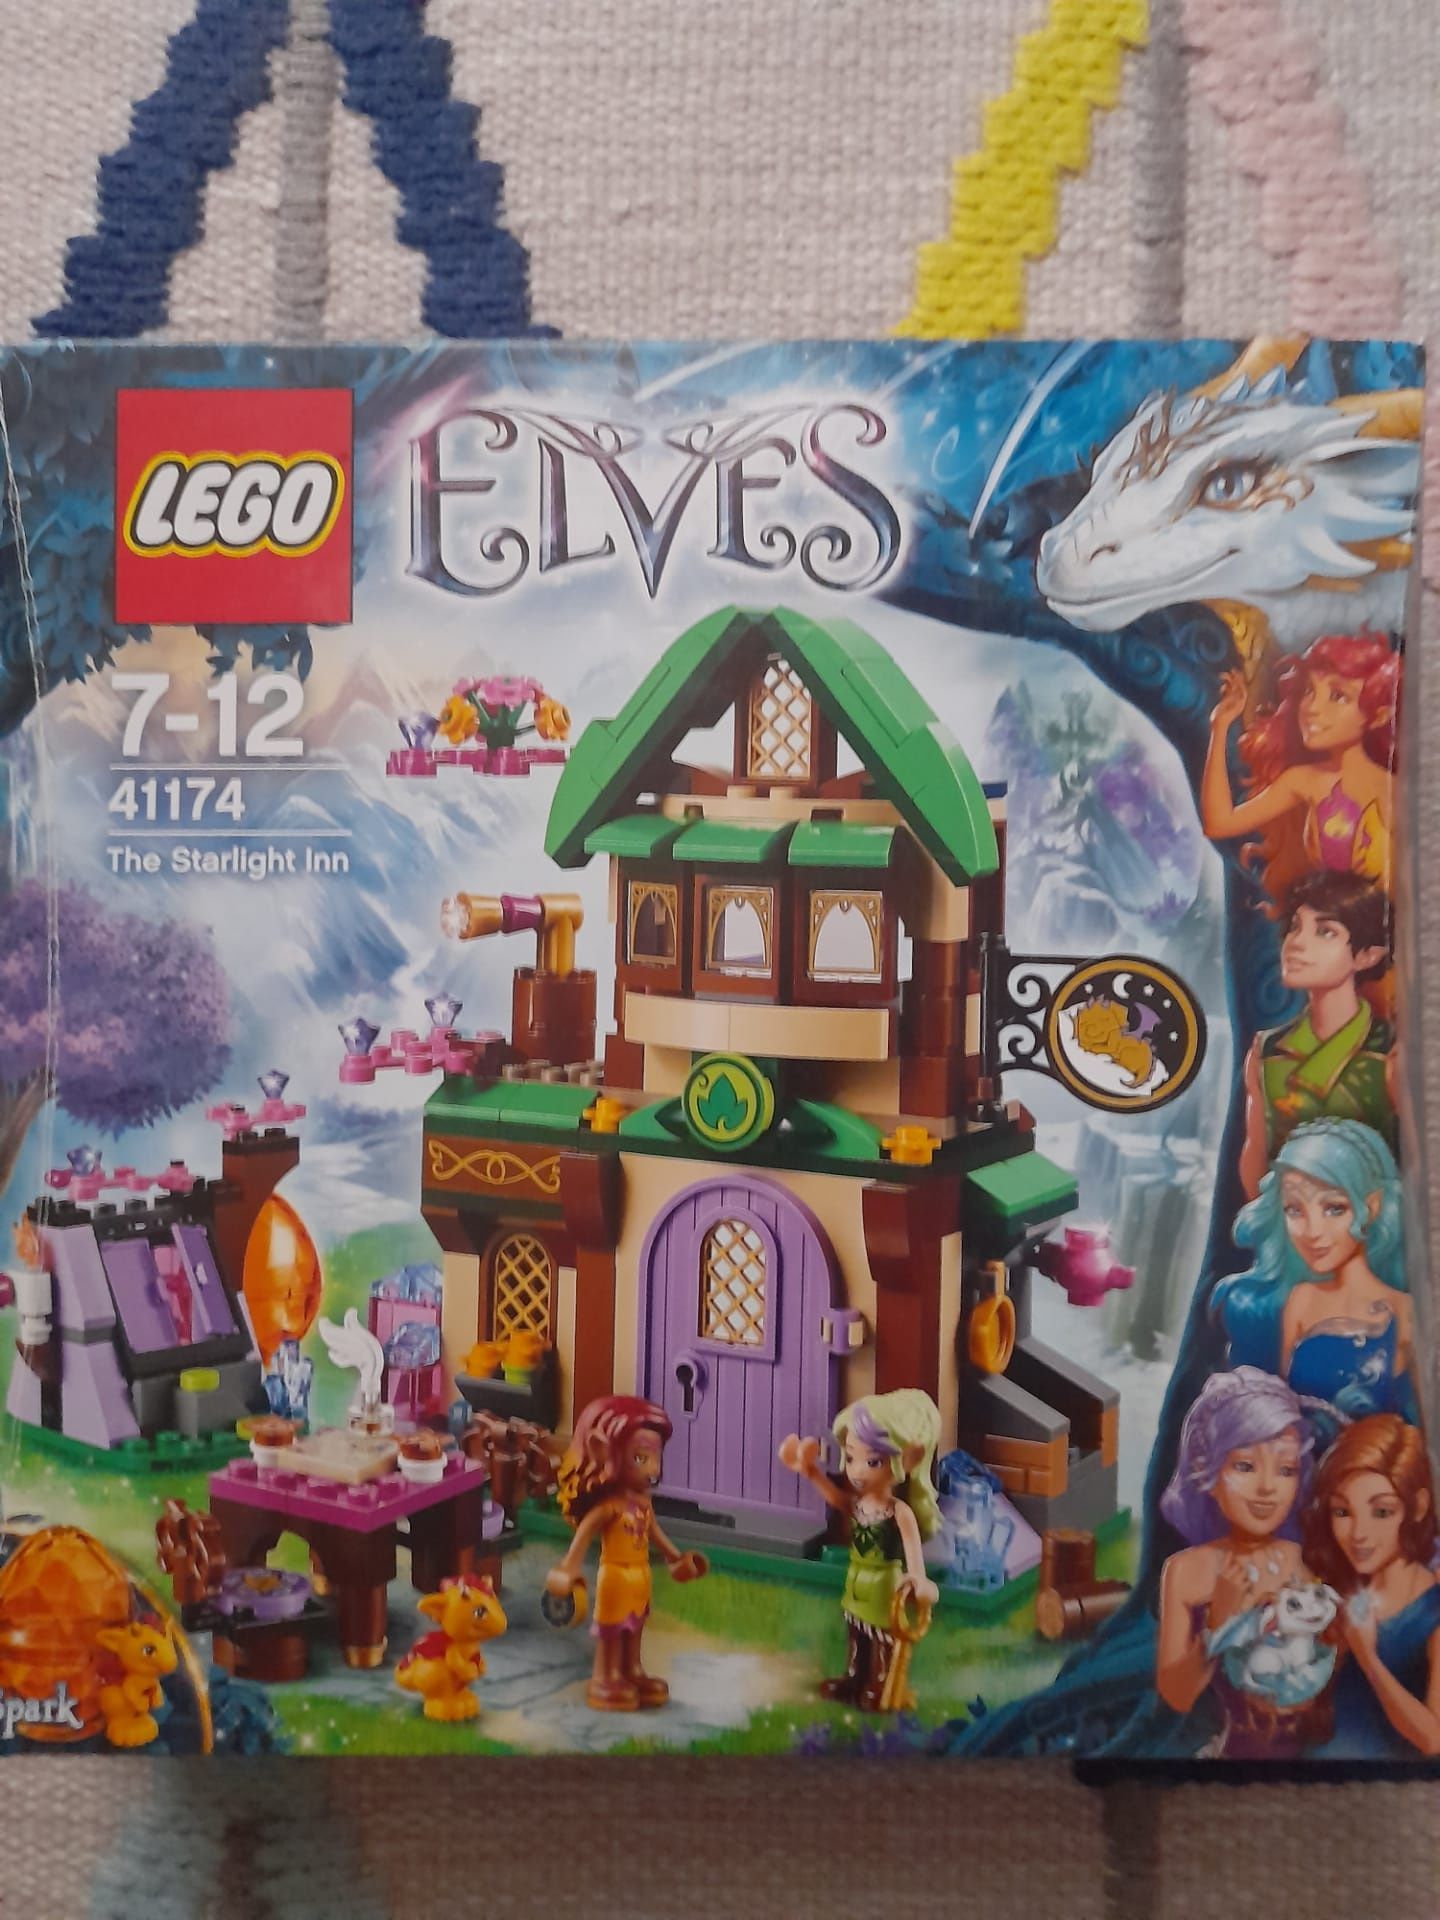 Lego Elves "The Starlight Inn" 41174